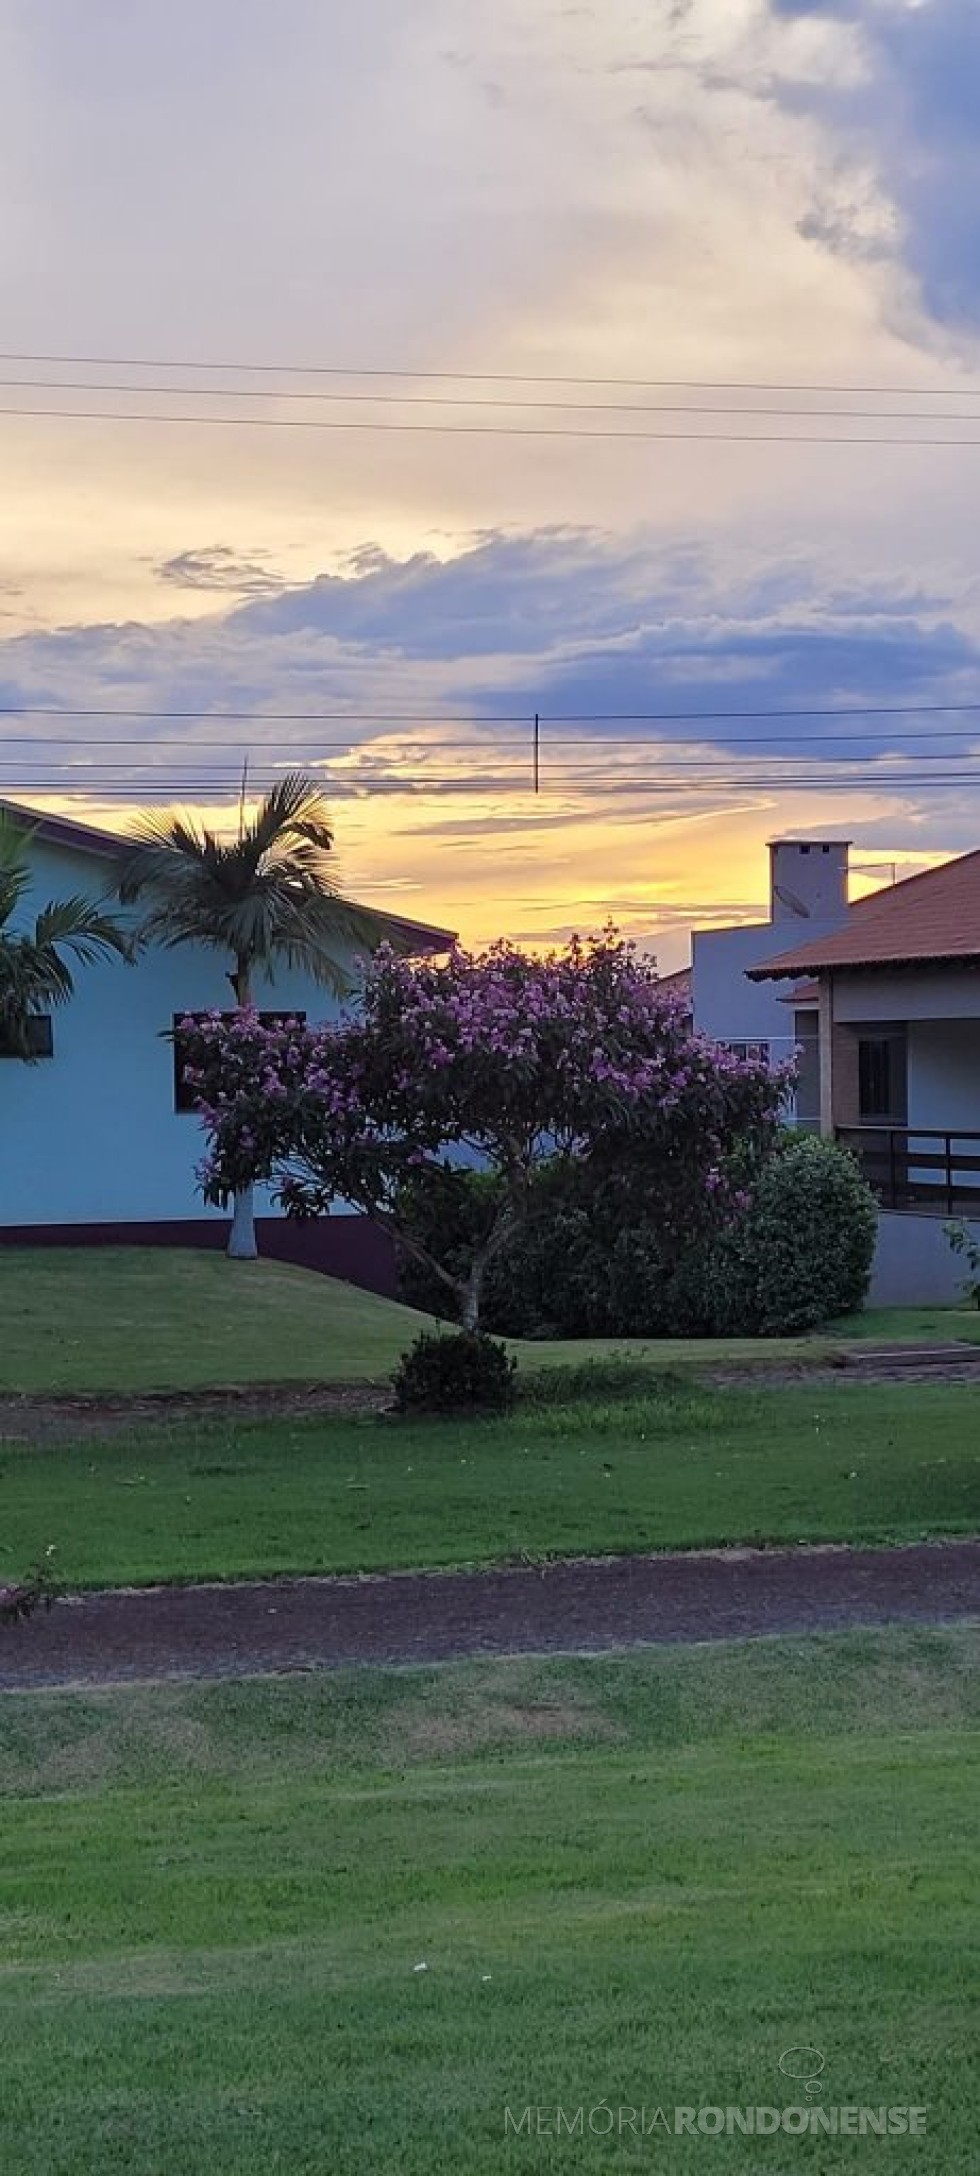 || Pôr-do-sol no interior do município de Marechal Cândido Rondon (PR), em 29 de janeiro de 2023., em clique feito pela pioneira rondonense Ilda Bet, a partir do Clube Náutico, no distrito de Porto Mendes. -- FOTO 18 - 